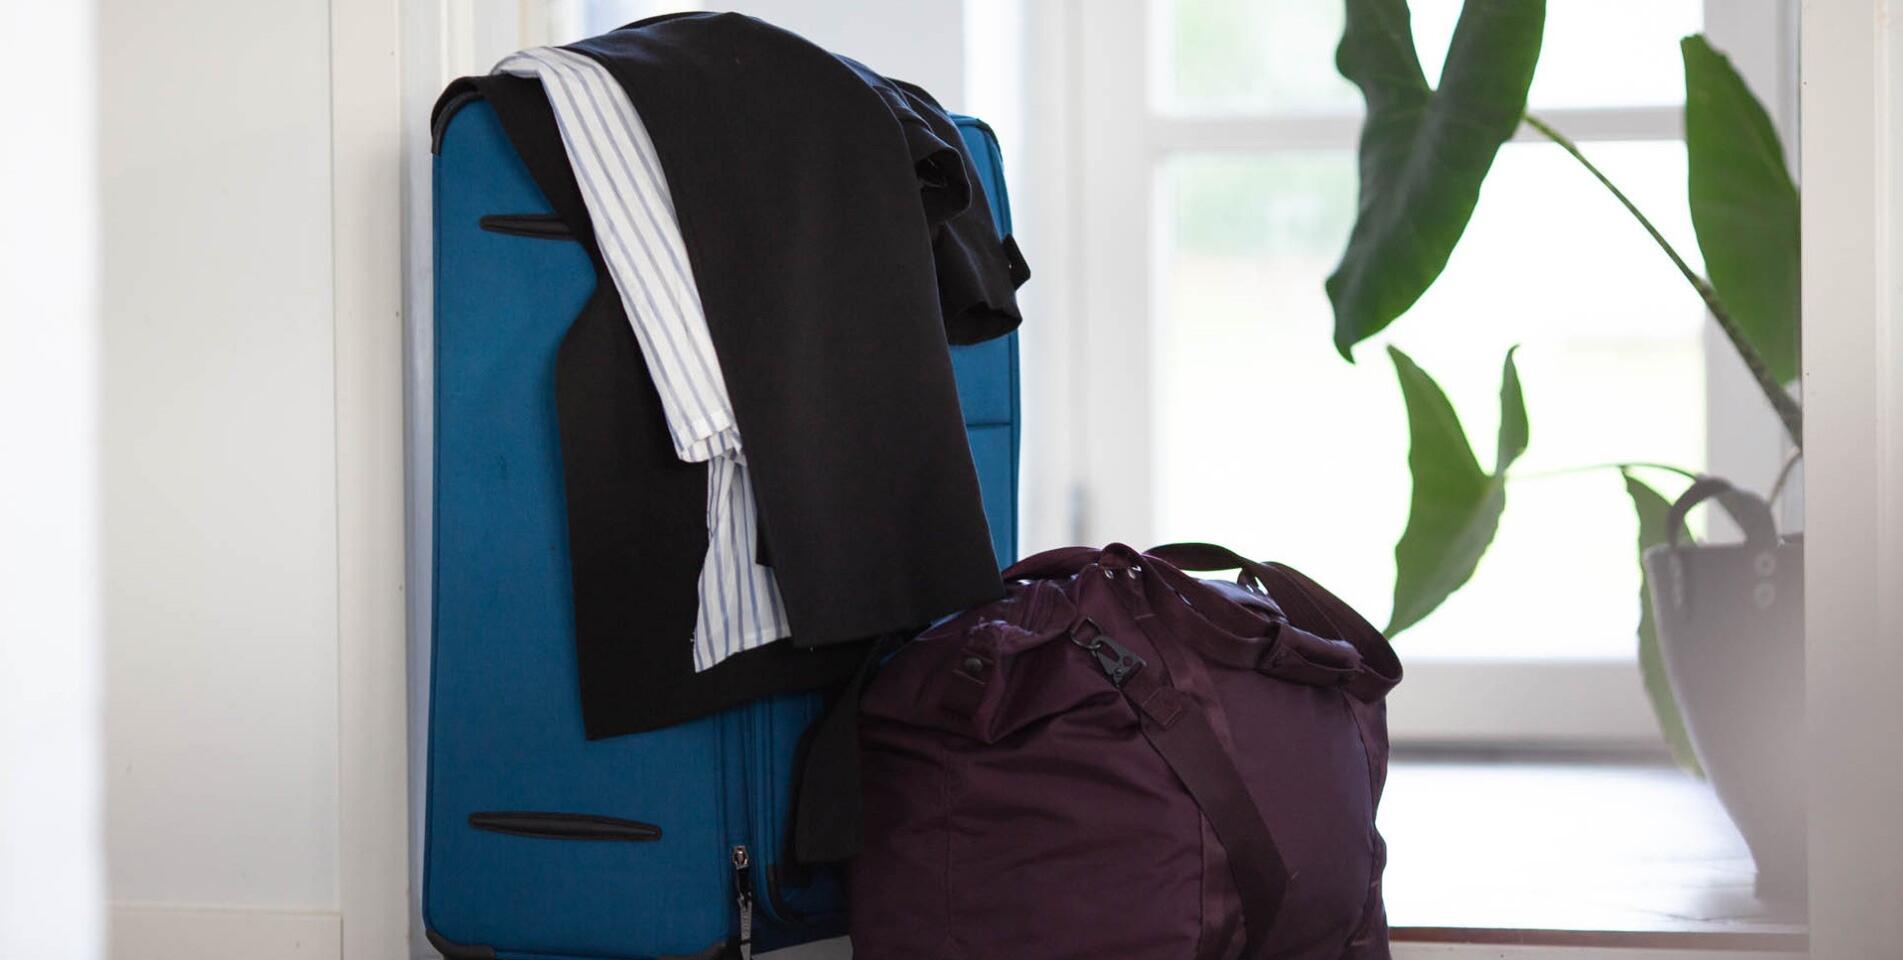 Kuffert og taske klar til ferie